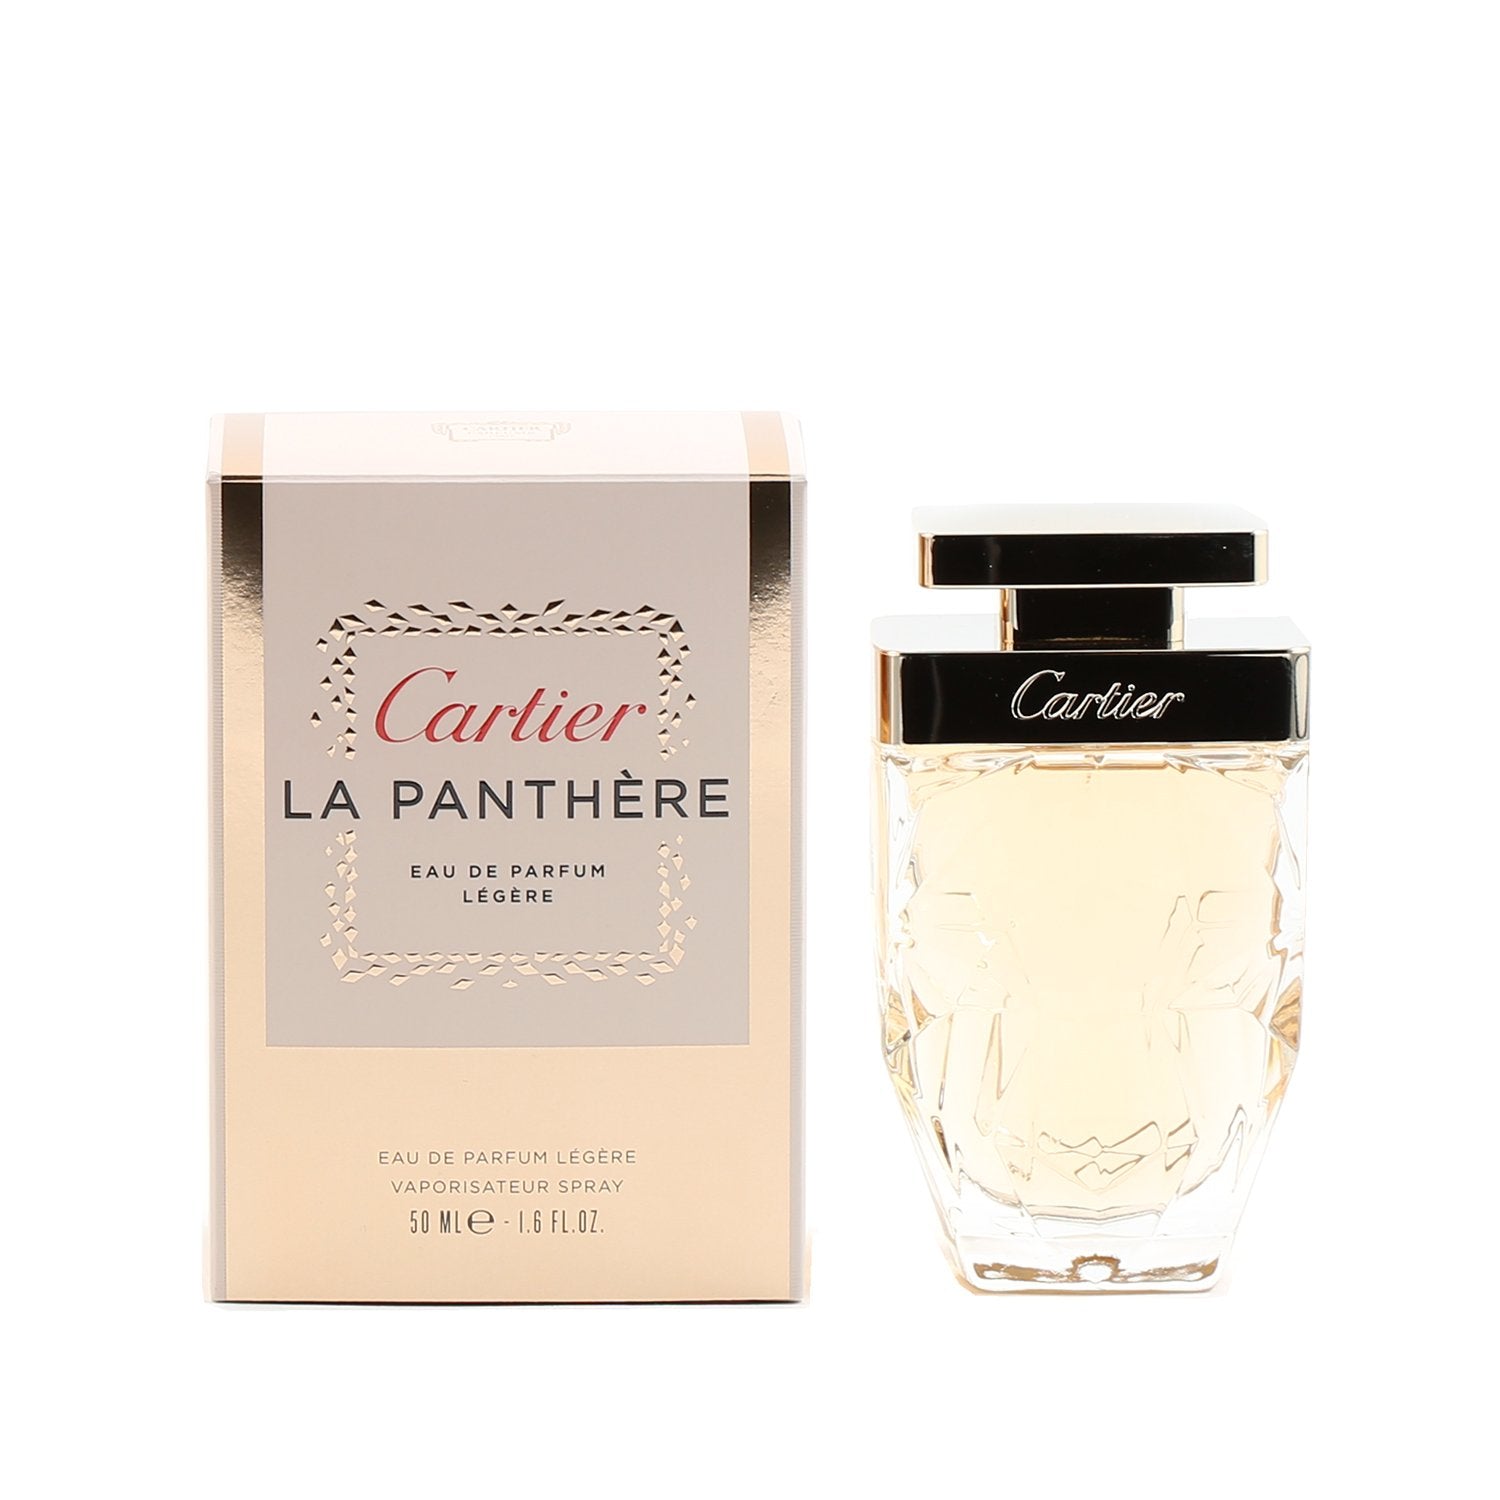 Cartier La Panthere Review (Eau de Parfum EdP)